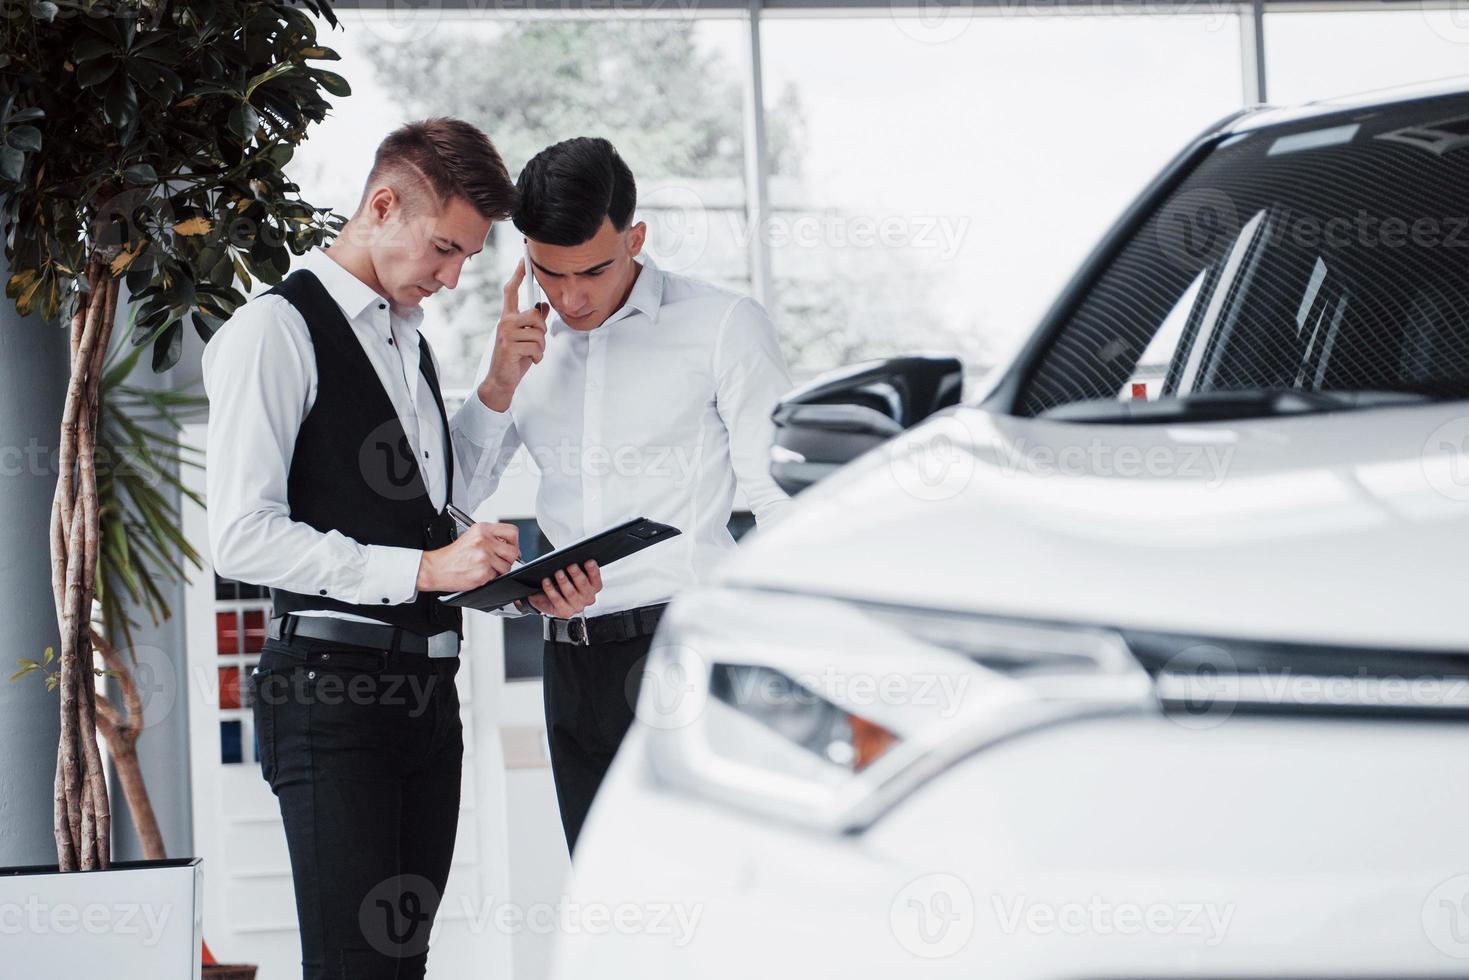 dois homens estão no showroom contra carros. close-up de um gerente de vendas em um terno que vende um carro para um cliente. o vendedor dá a chave ao cliente. foto